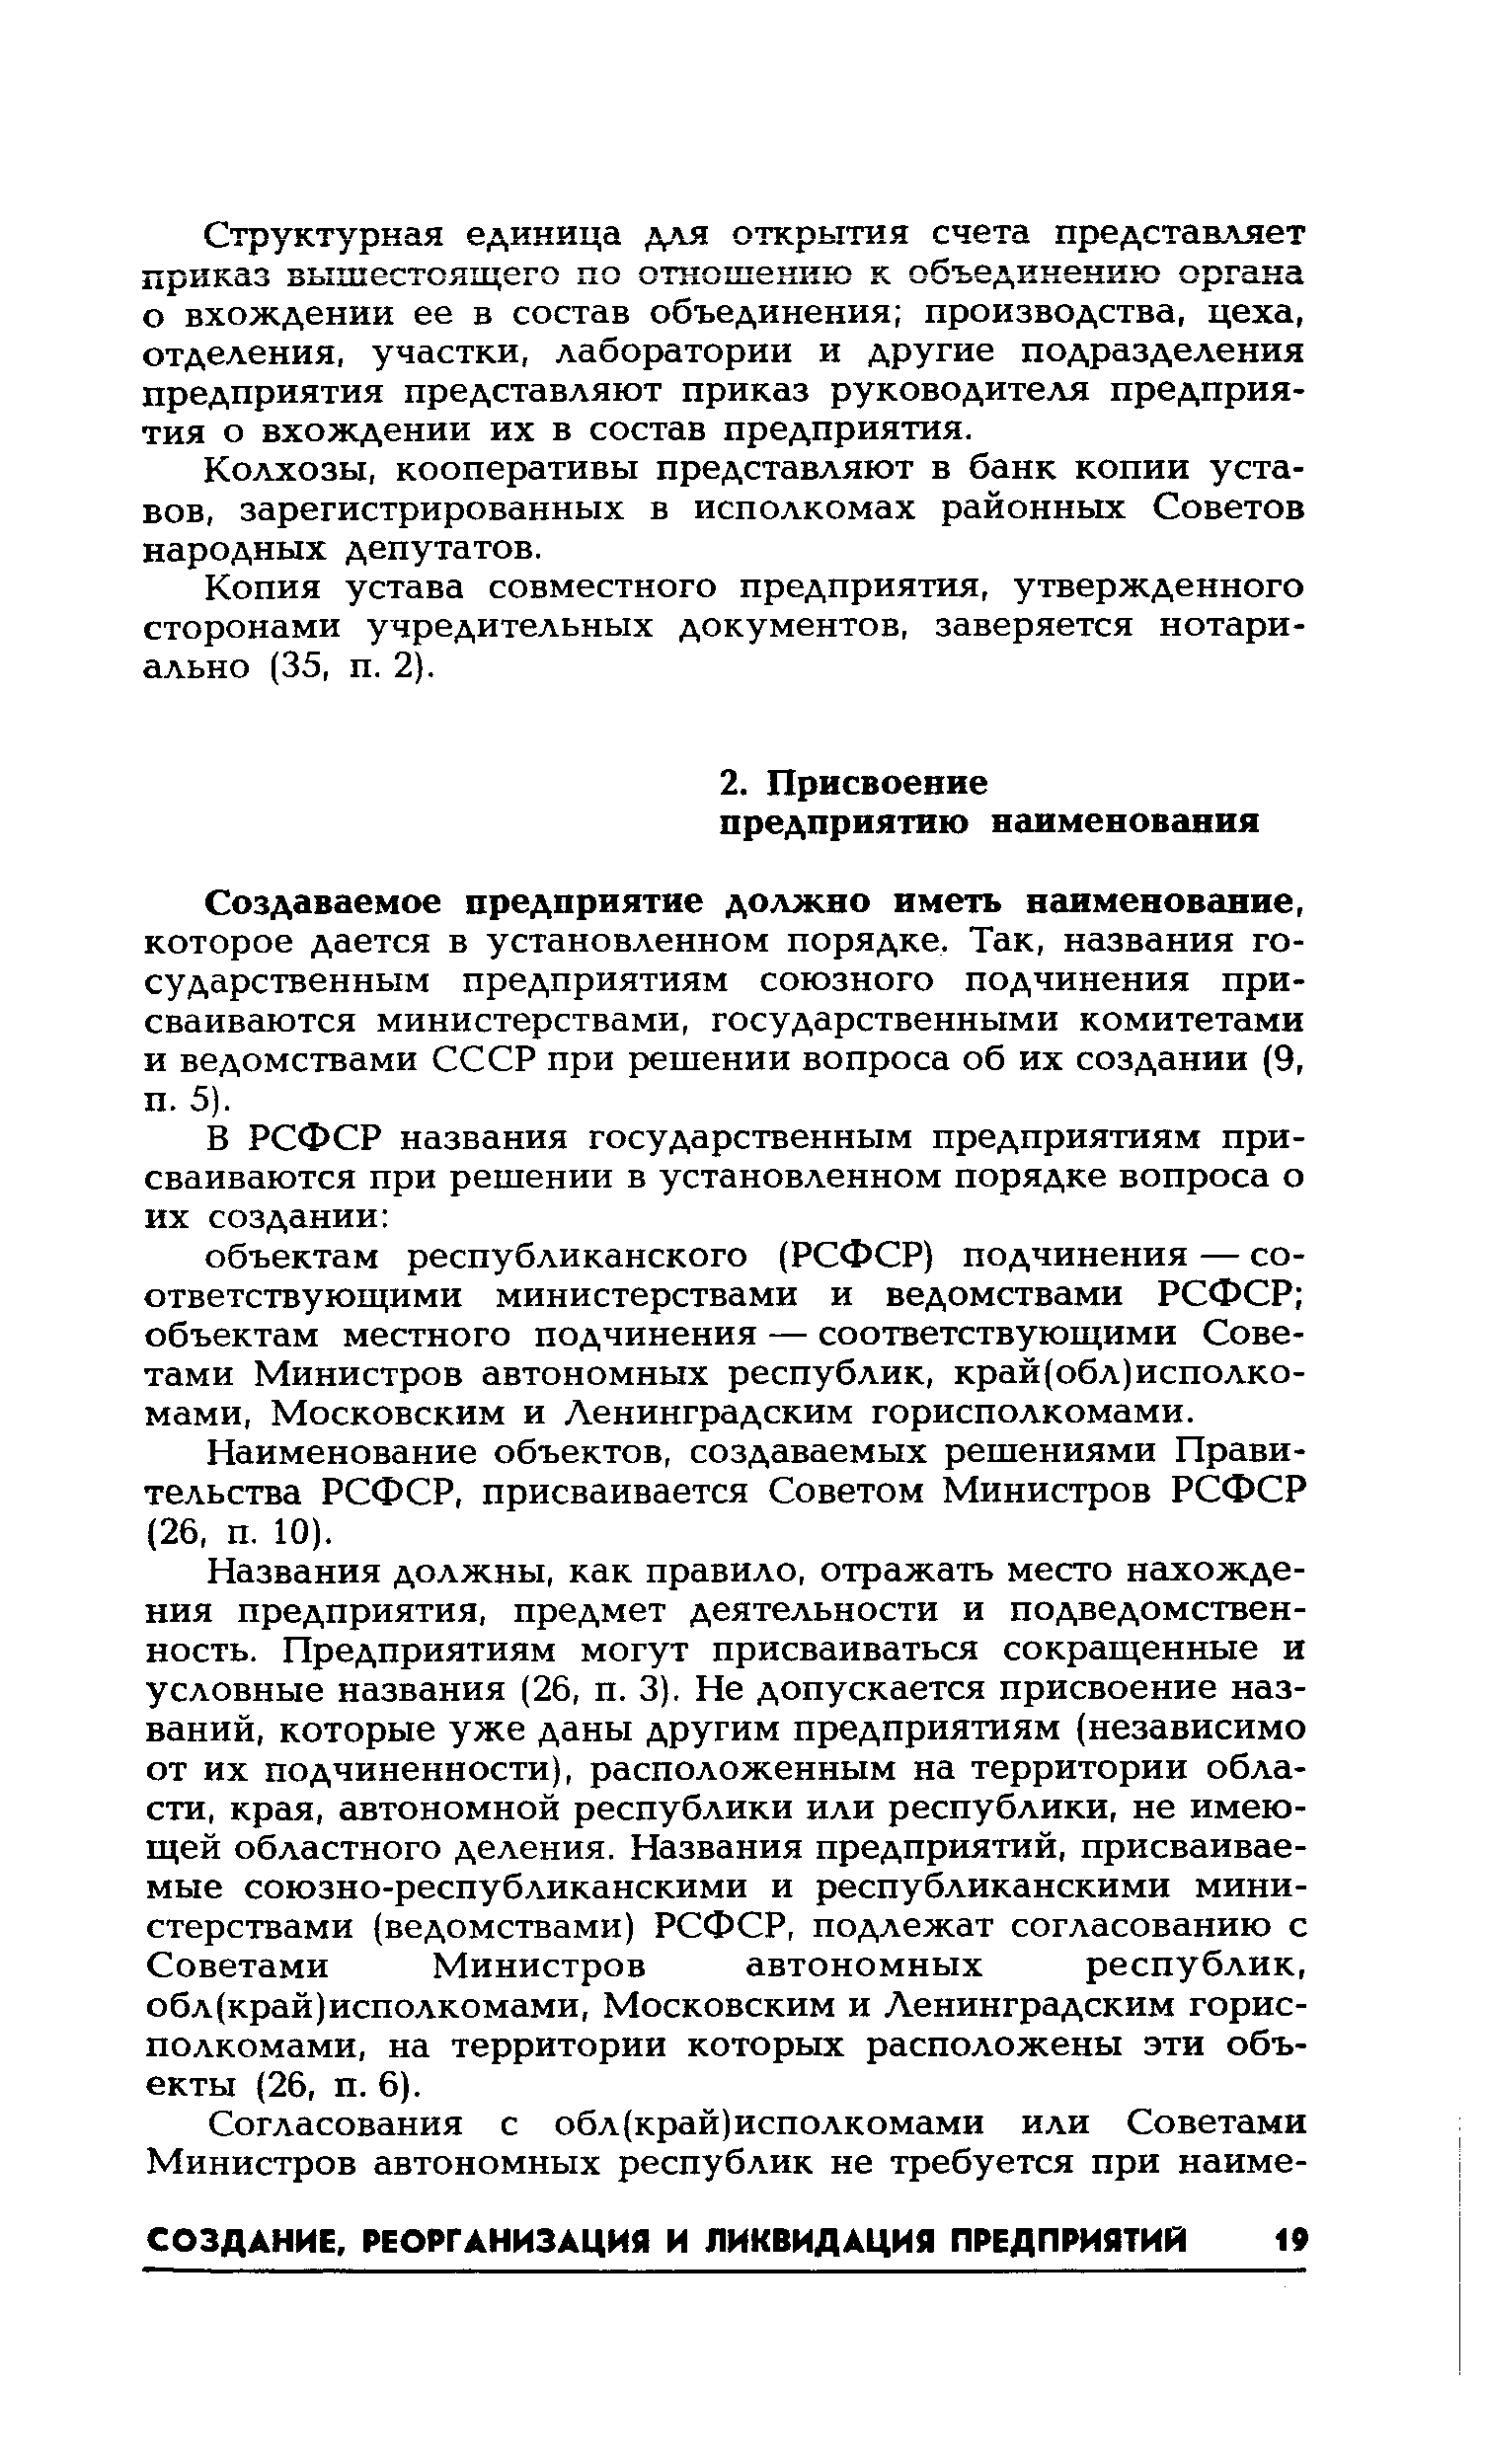 Наименование объектов, создаваемых решениями Правительства РСФСР, присваивается Советом Министров РСФСР (26, п. 10).
